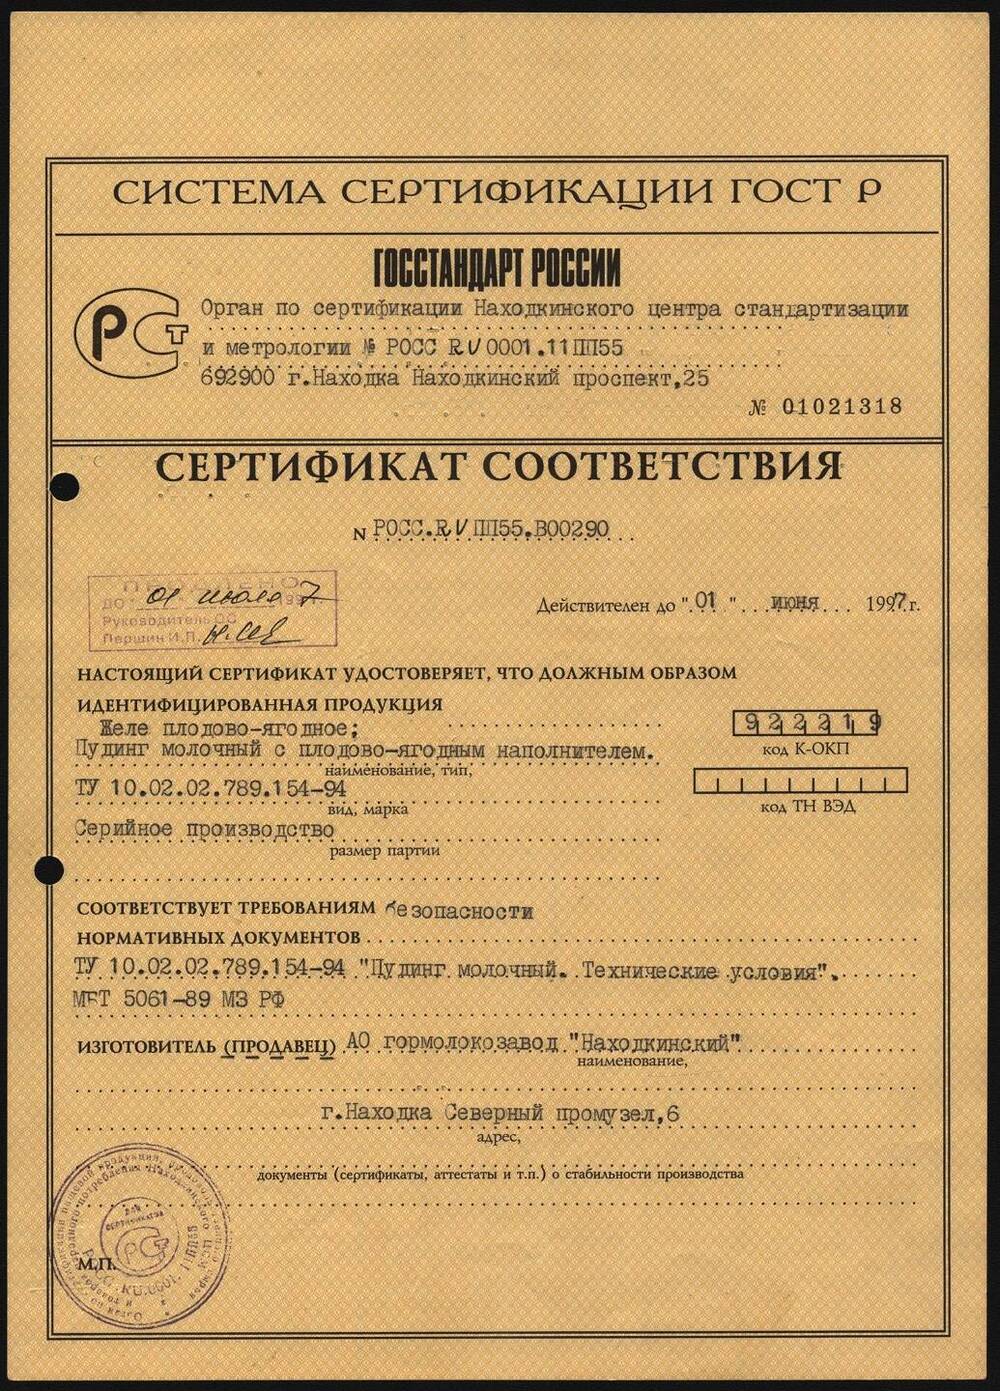 Сертификат соответствия на удостоверение и идентификацию продукции АО гормолокозавод Находкинский.